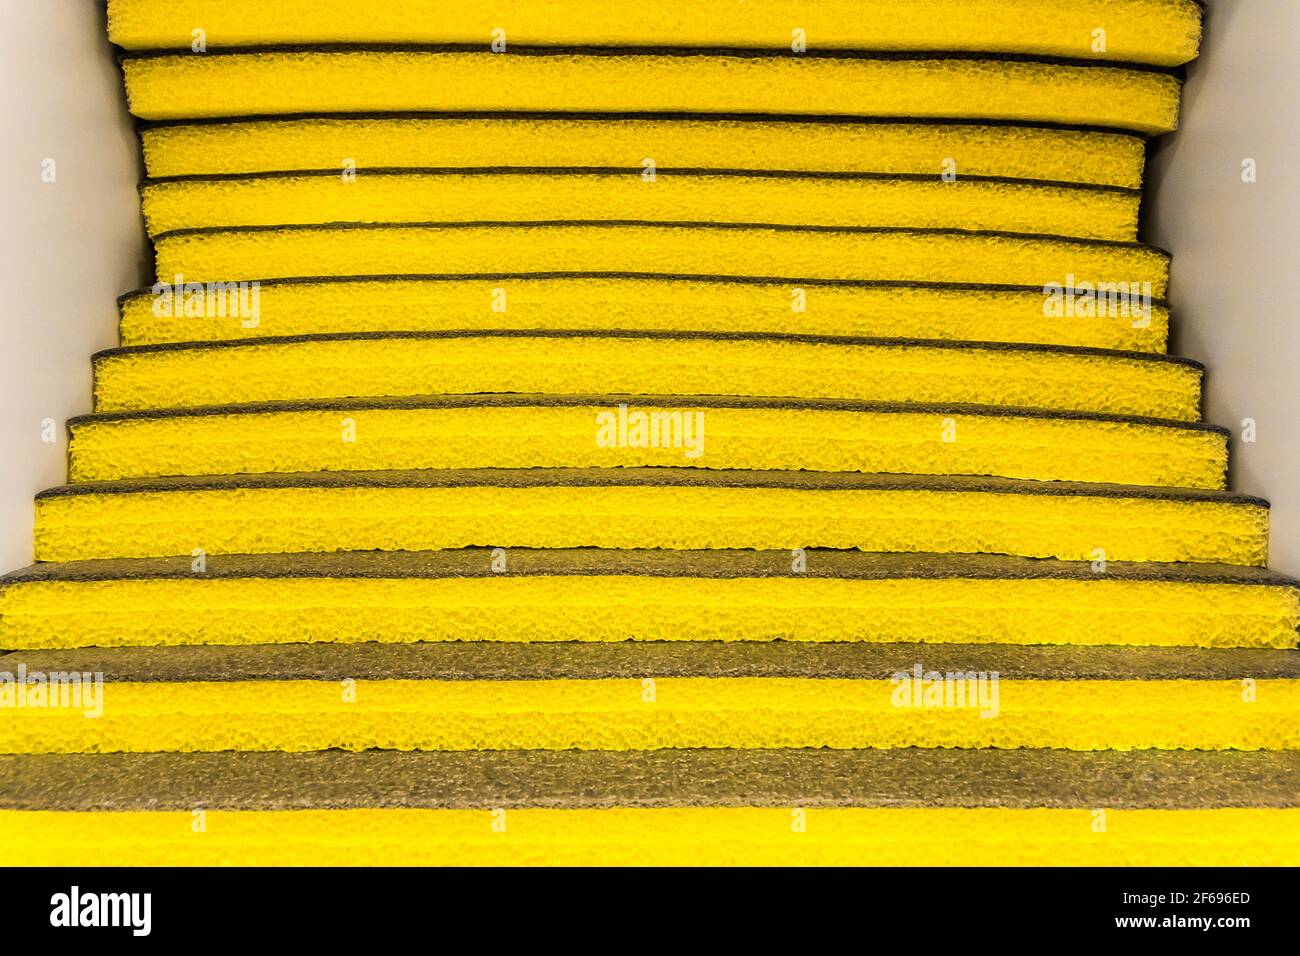 Matériau d'isolation thermique jaune, texture de l'euroblock dans un magasin de quincaillerie, matériau de construction. Banque D'Images